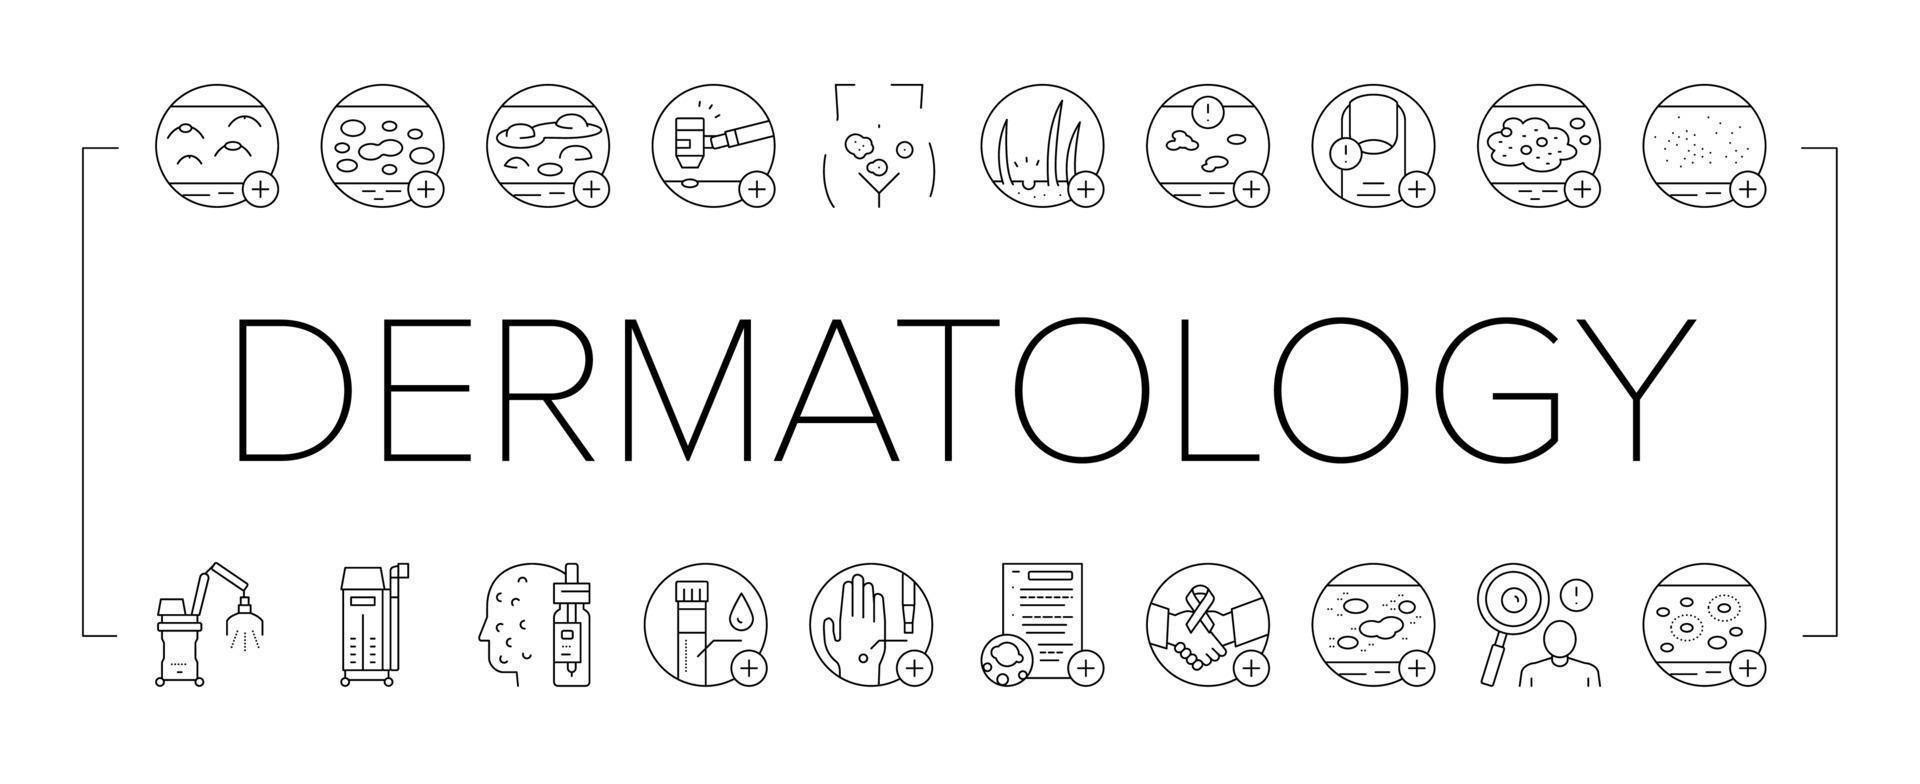 collection de problèmes de dermatologie icons set vector